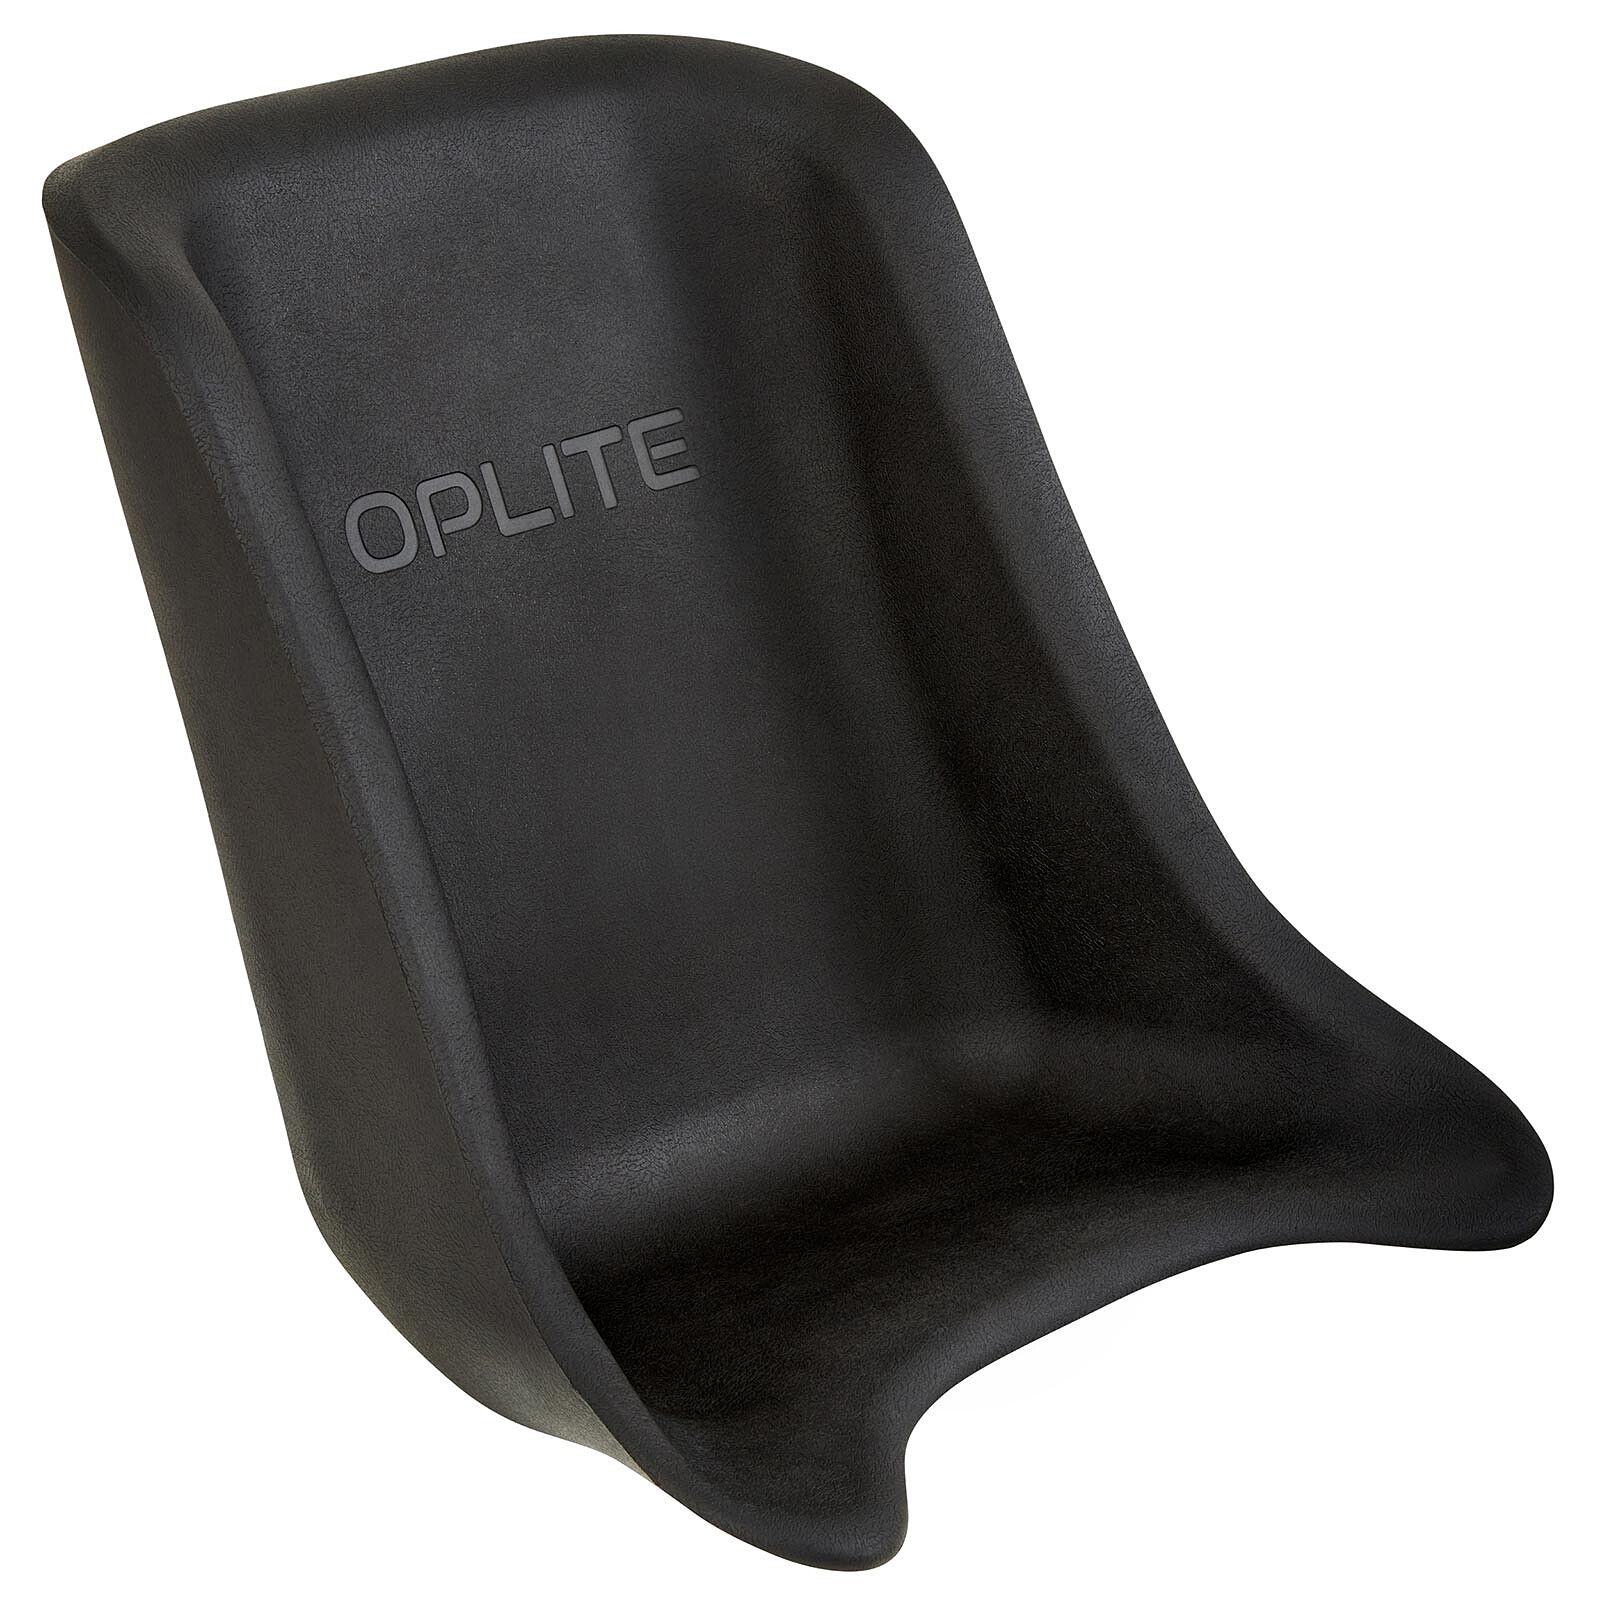 OPLITE Race & Flight Desk Mount - Autres accessoires jeu - Garantie 3 ans  LDLC